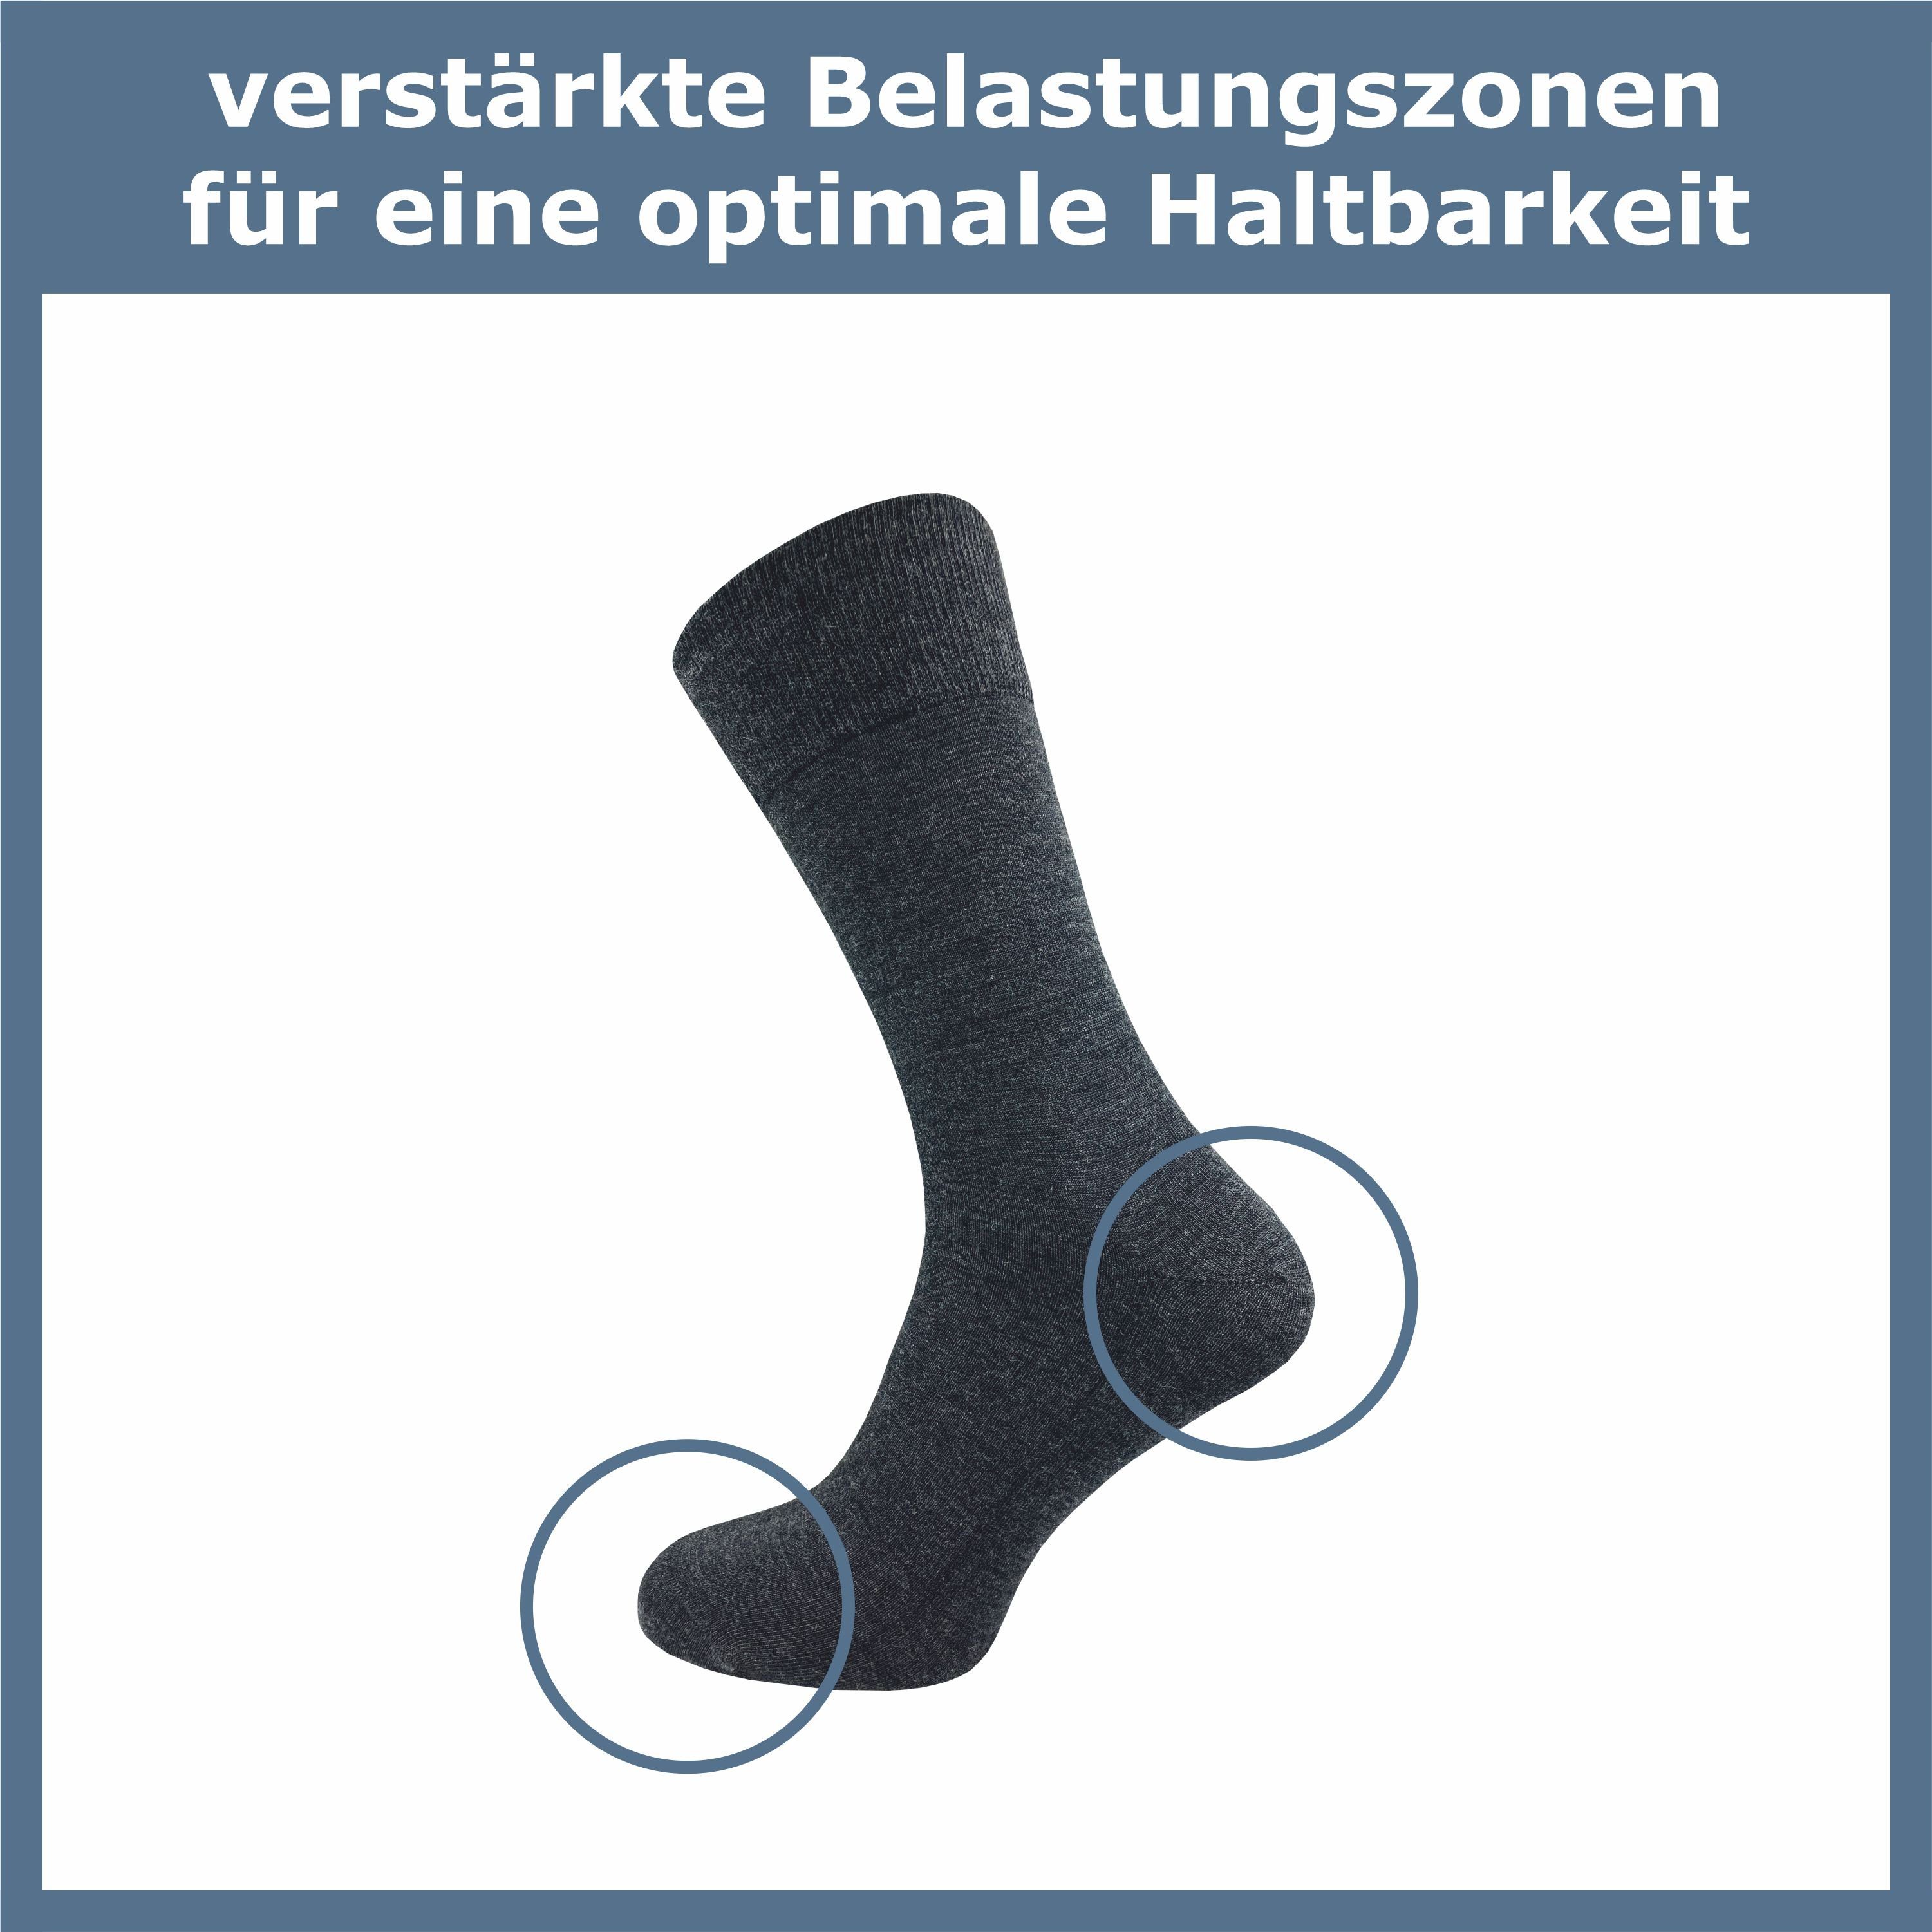 kühlen im Herren - Socken Socken Winter Schurwolle aus (5 Sommer Wolle GAWILO und aus Klimaregulierende wärmen Businesssocken Merino grau Merino 64% Paar) für im